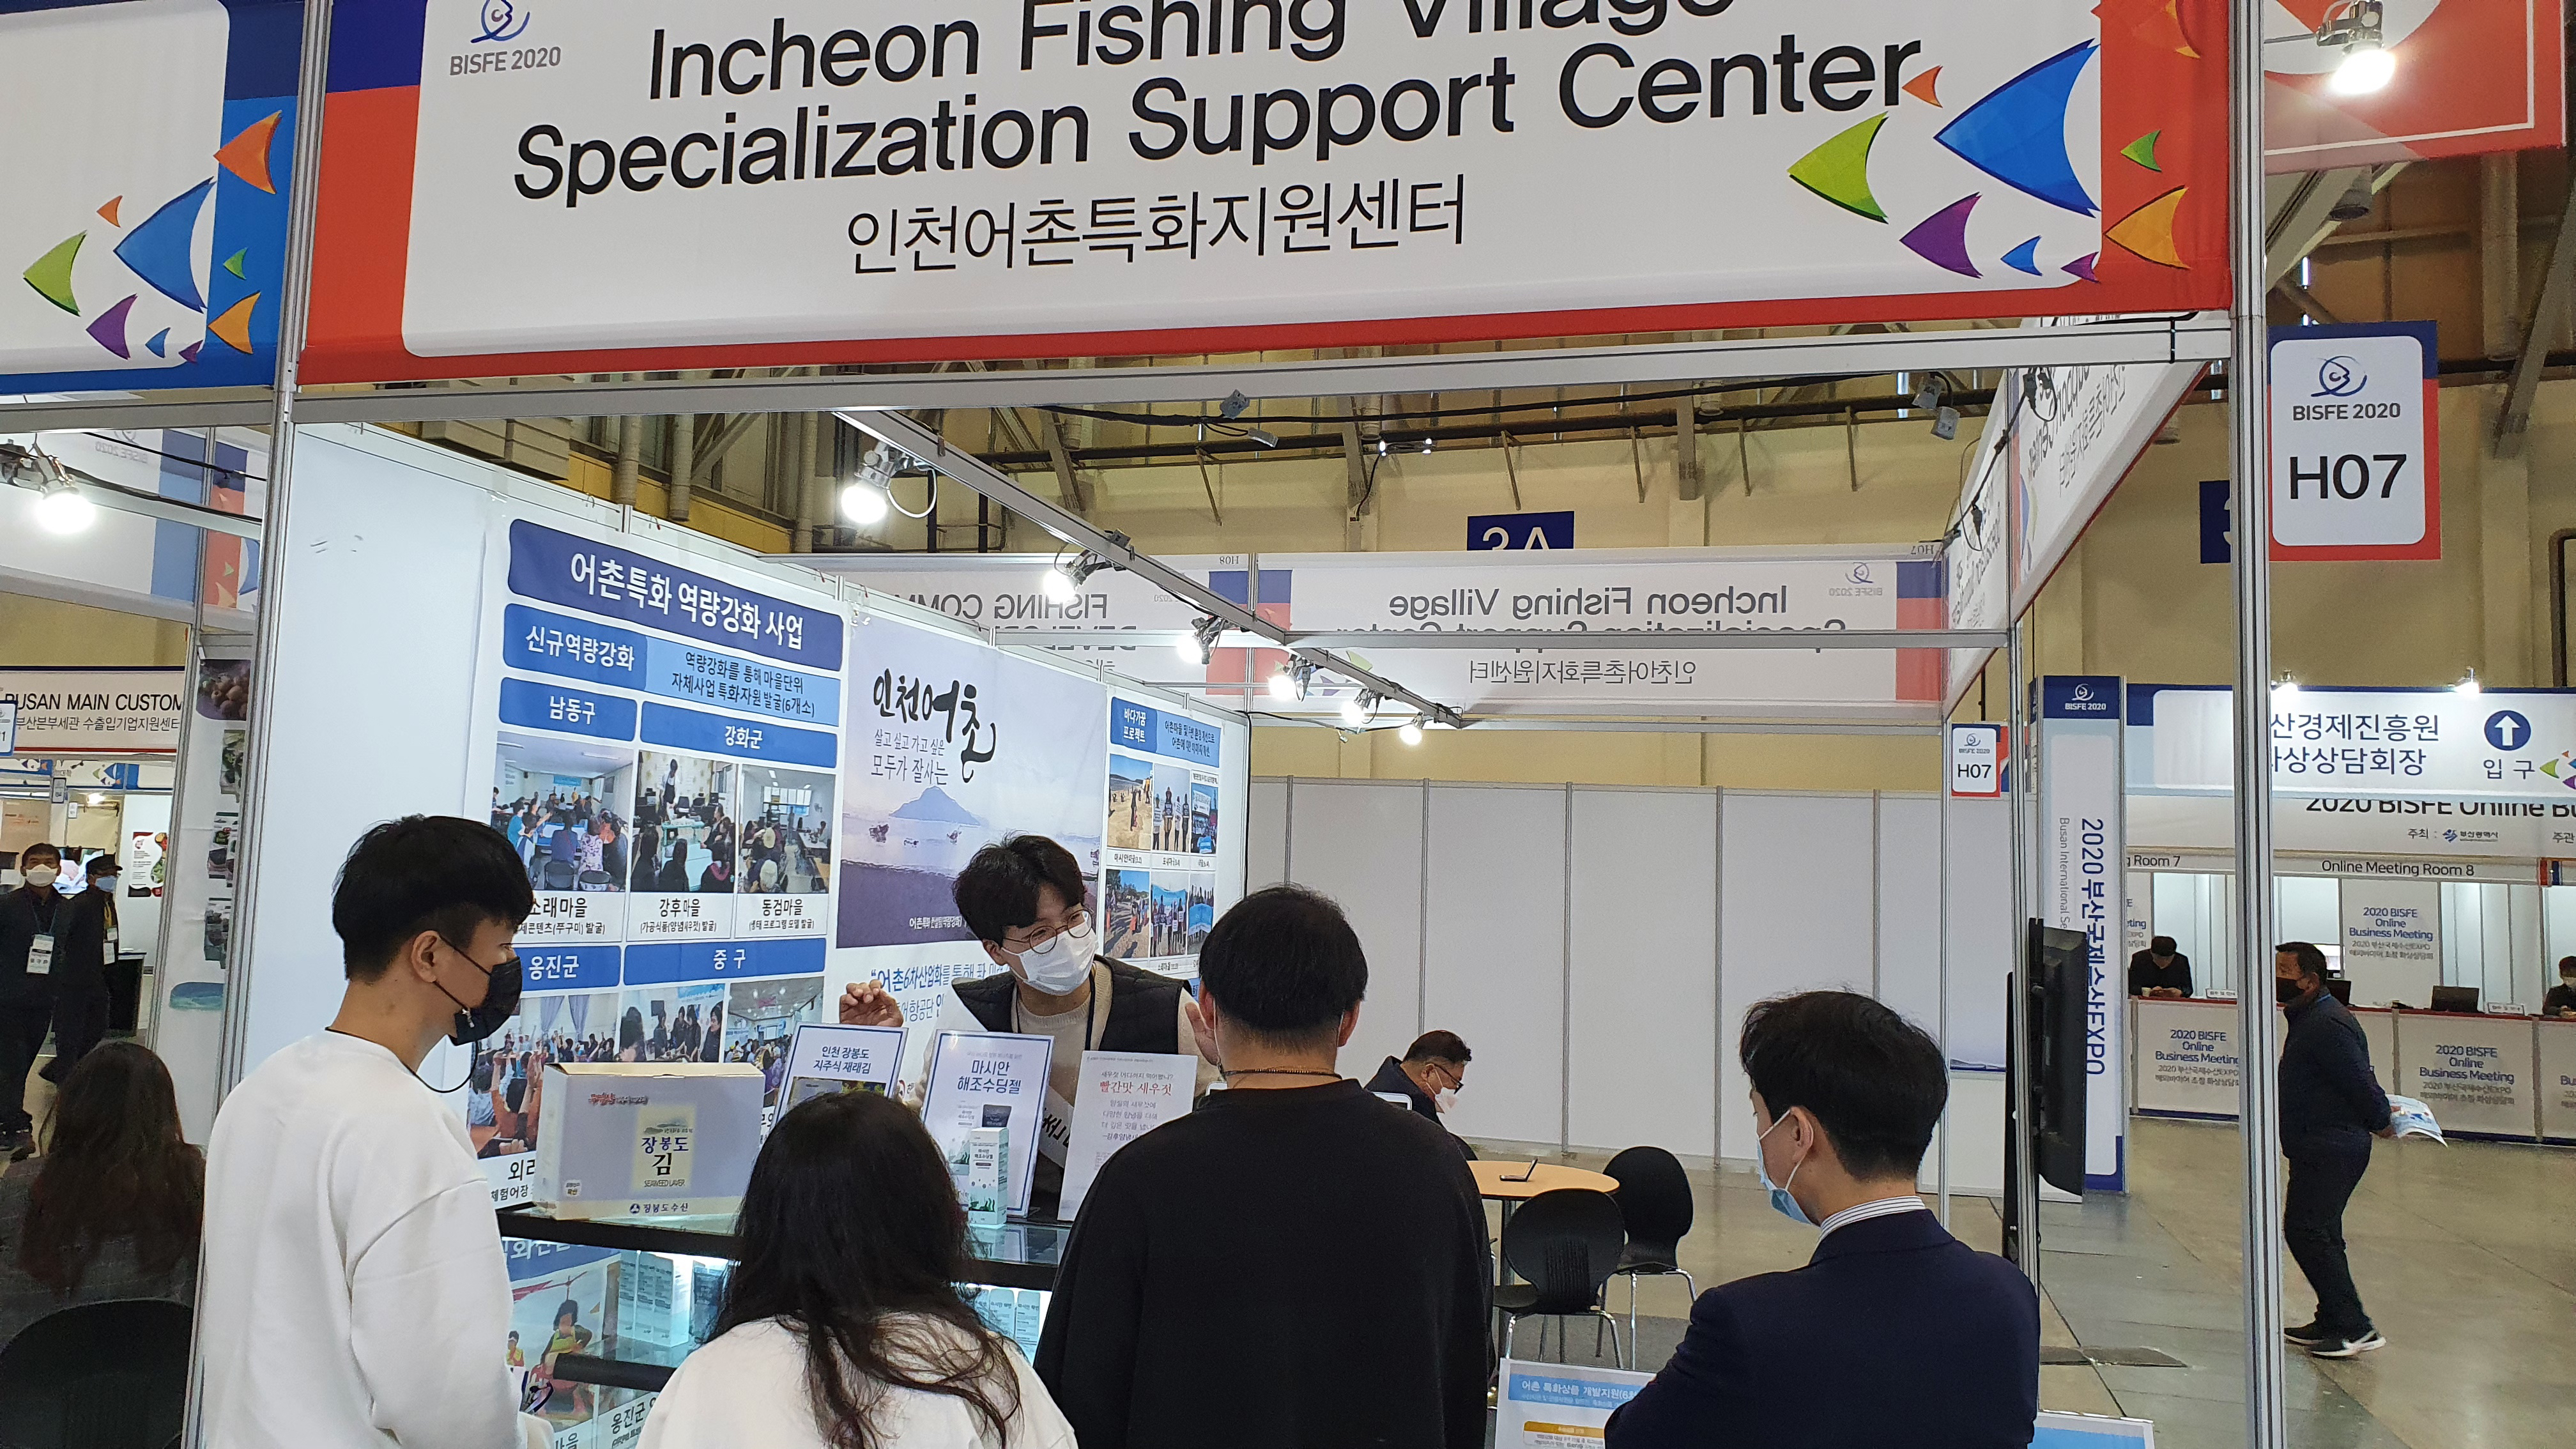 한국어촌어항공단, 어촌마을 특화상품 홍보를 위해 2020 부산국제수산엑스포에 참여